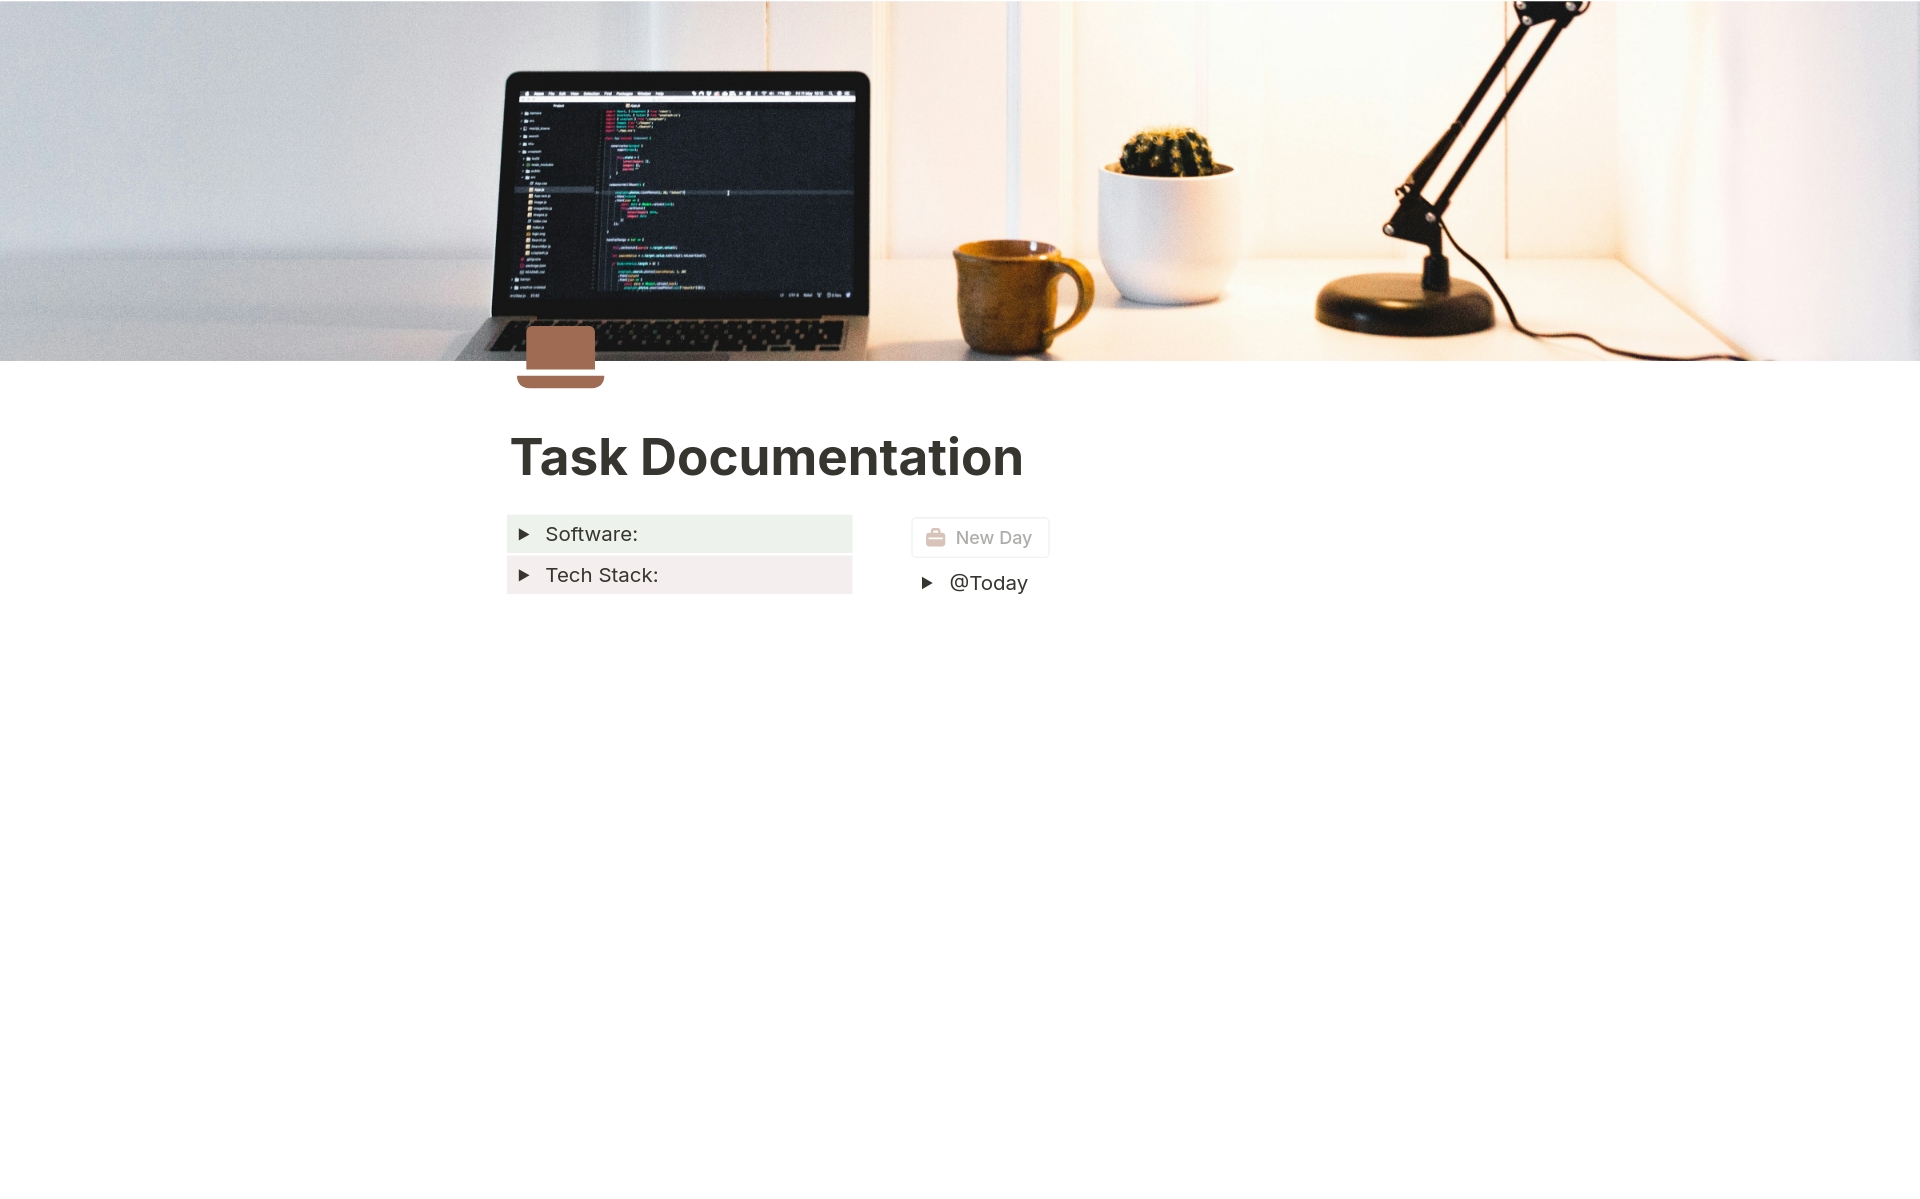 Uma prévia do modelo para Task Documentation